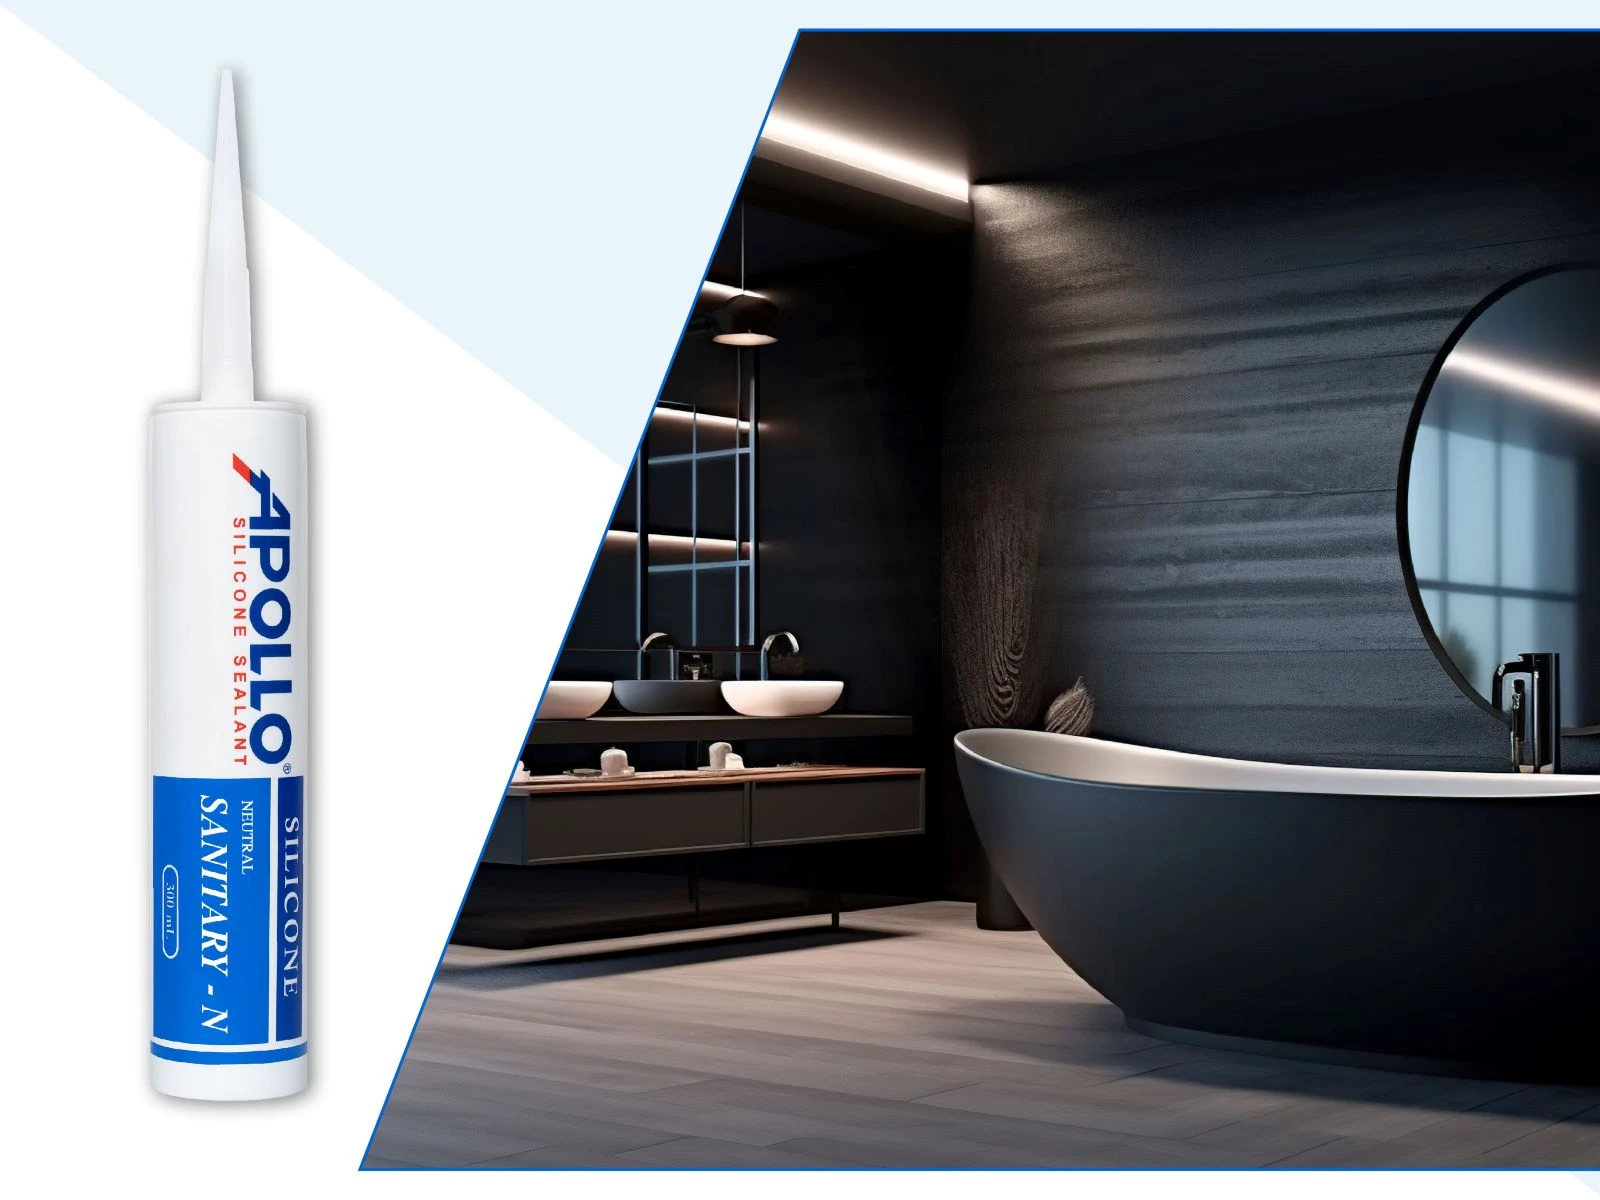 Apollo Silicone Sealant Sanitary - N - Chất trám chuyên dụng cho phòng tắm, nhà vệ sinh cao cấp